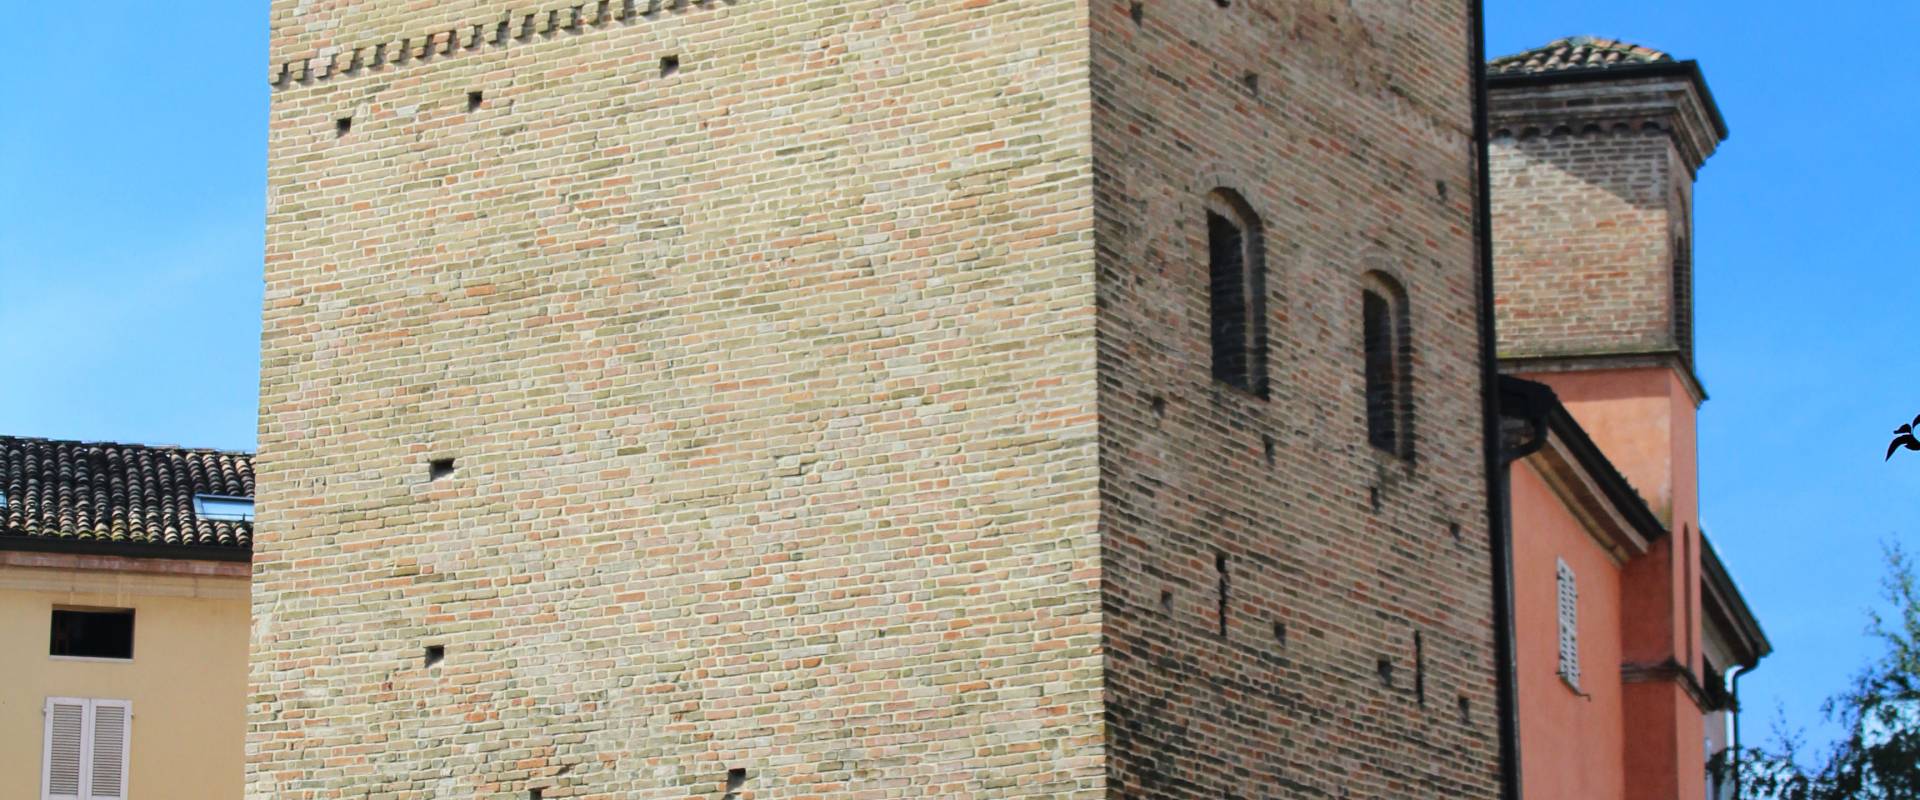 Torre Medievale di Fidenza photo by Chiara Zanacchi